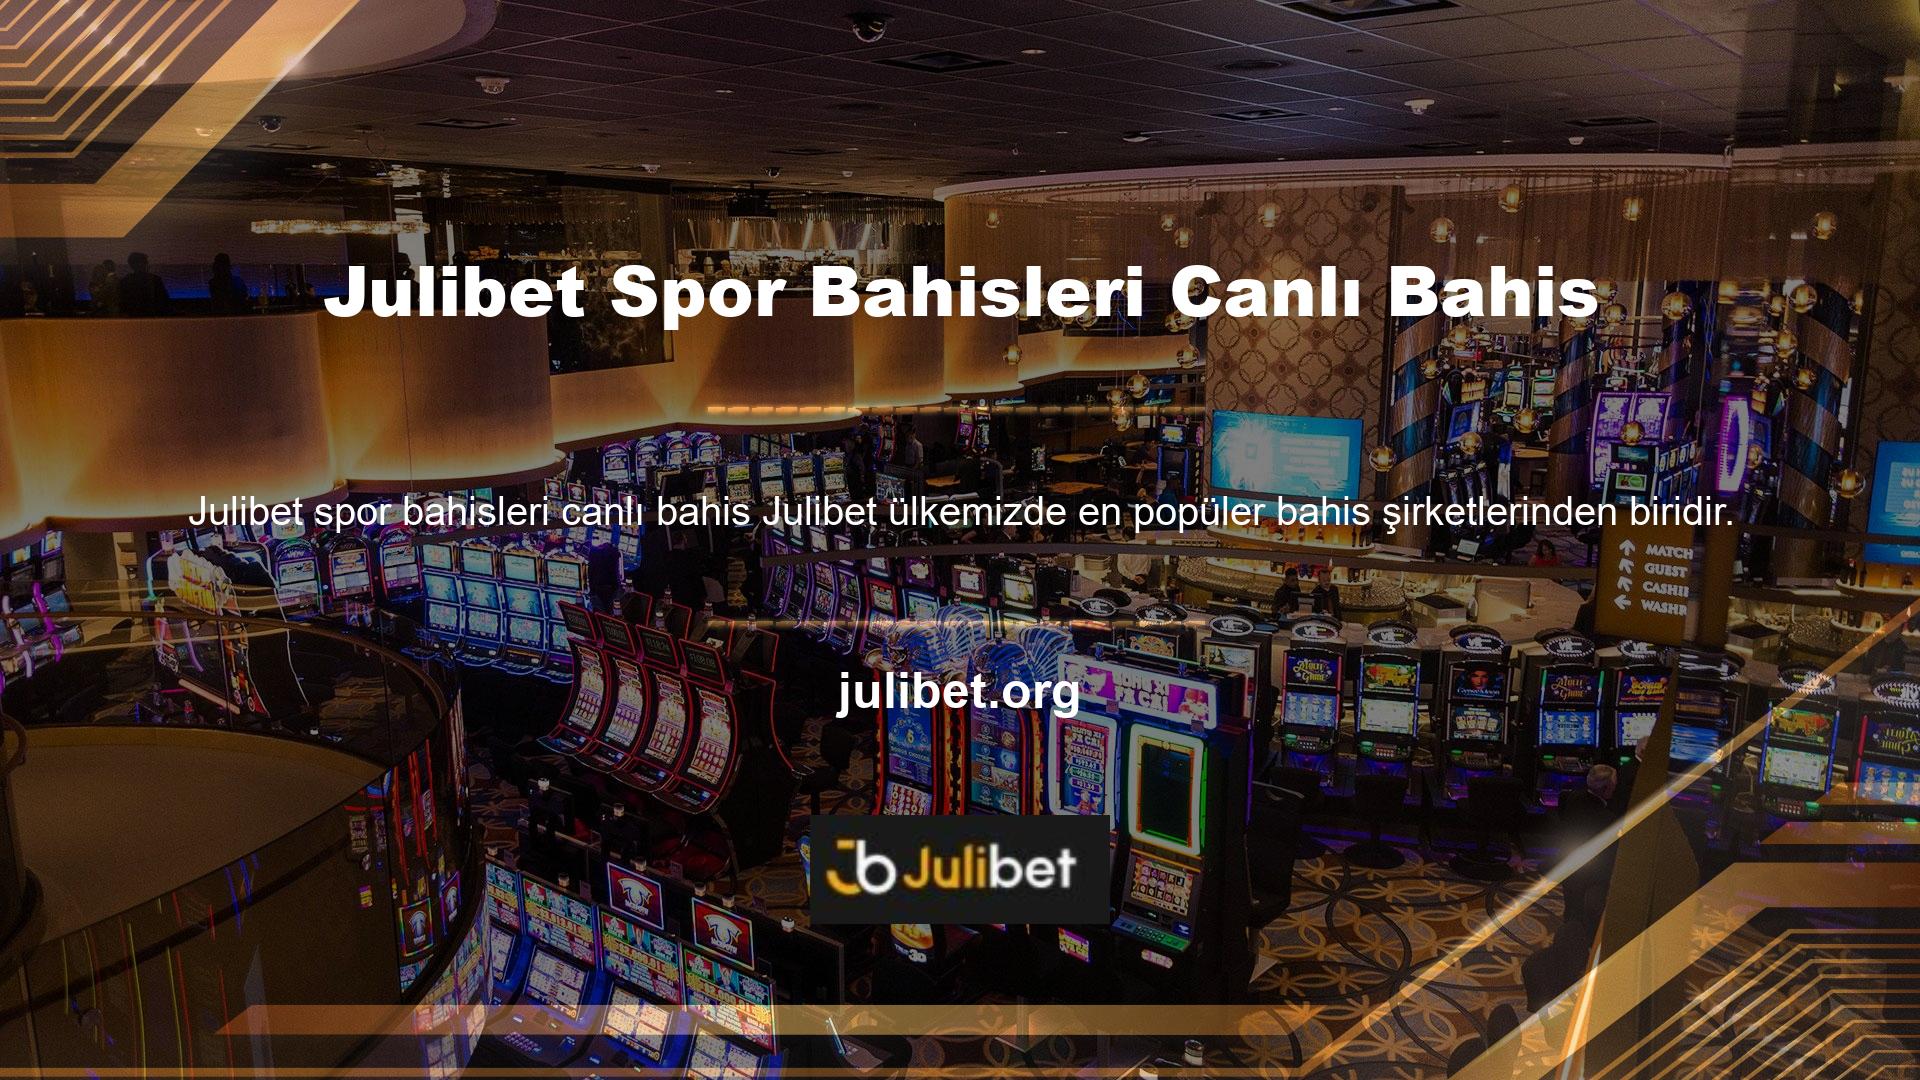 Julibet spor bahisleri canlı bahis, casino, klasik spor bahisleri ve daha birçok oyunu sunmaktadır